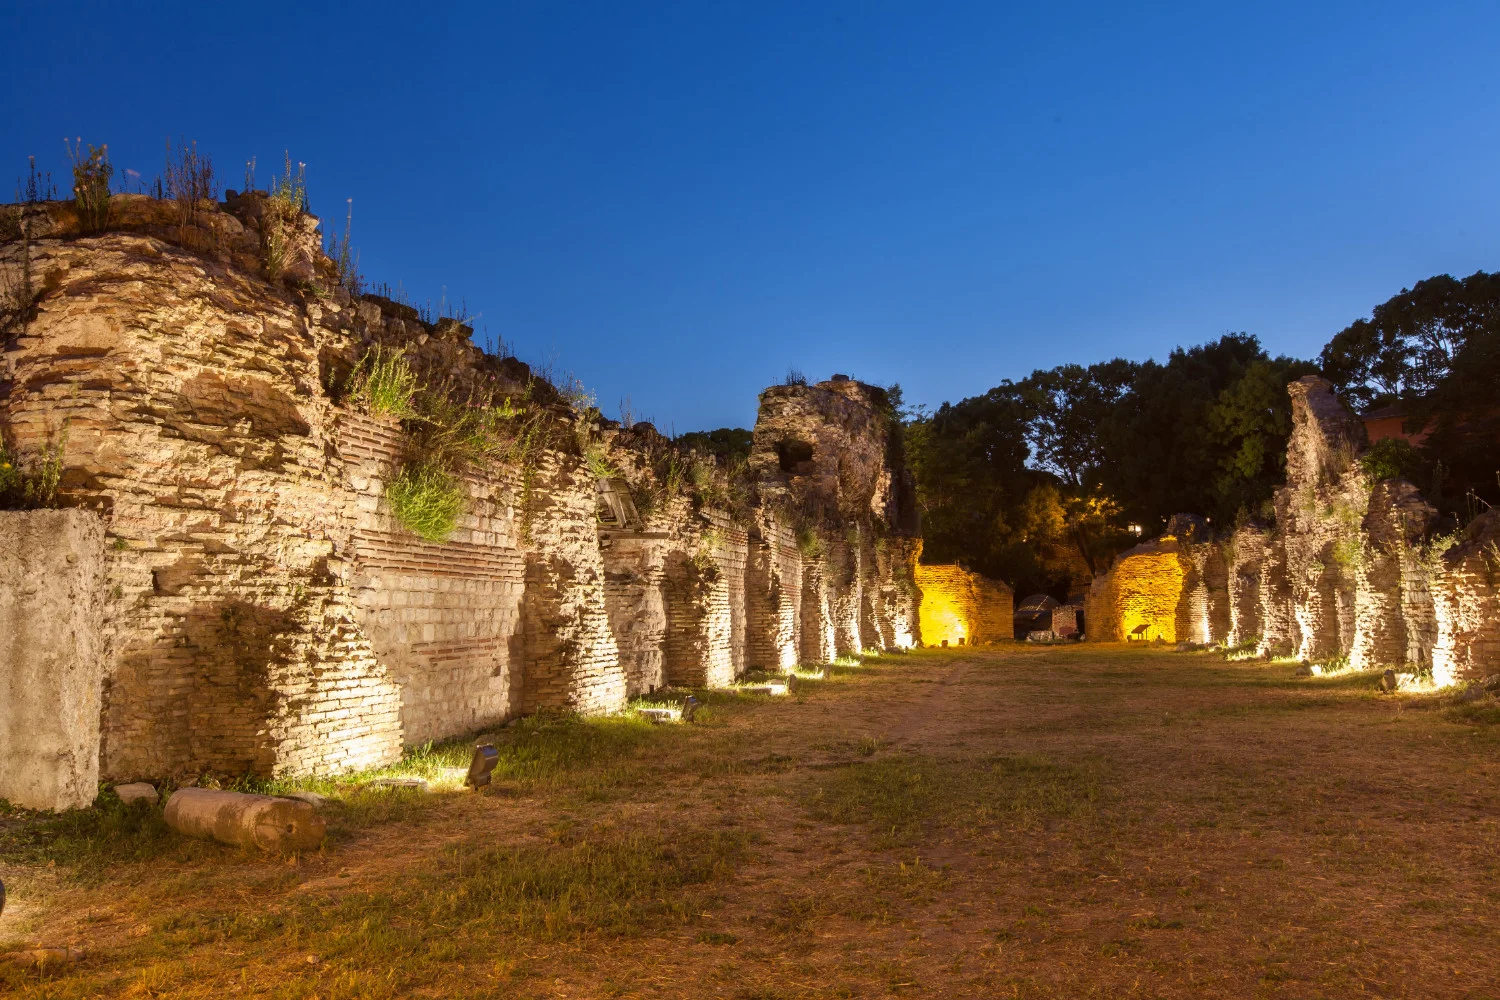 Vizitați Termele Romane, o dovadă a bogatei mosteniri romane a Varnei.